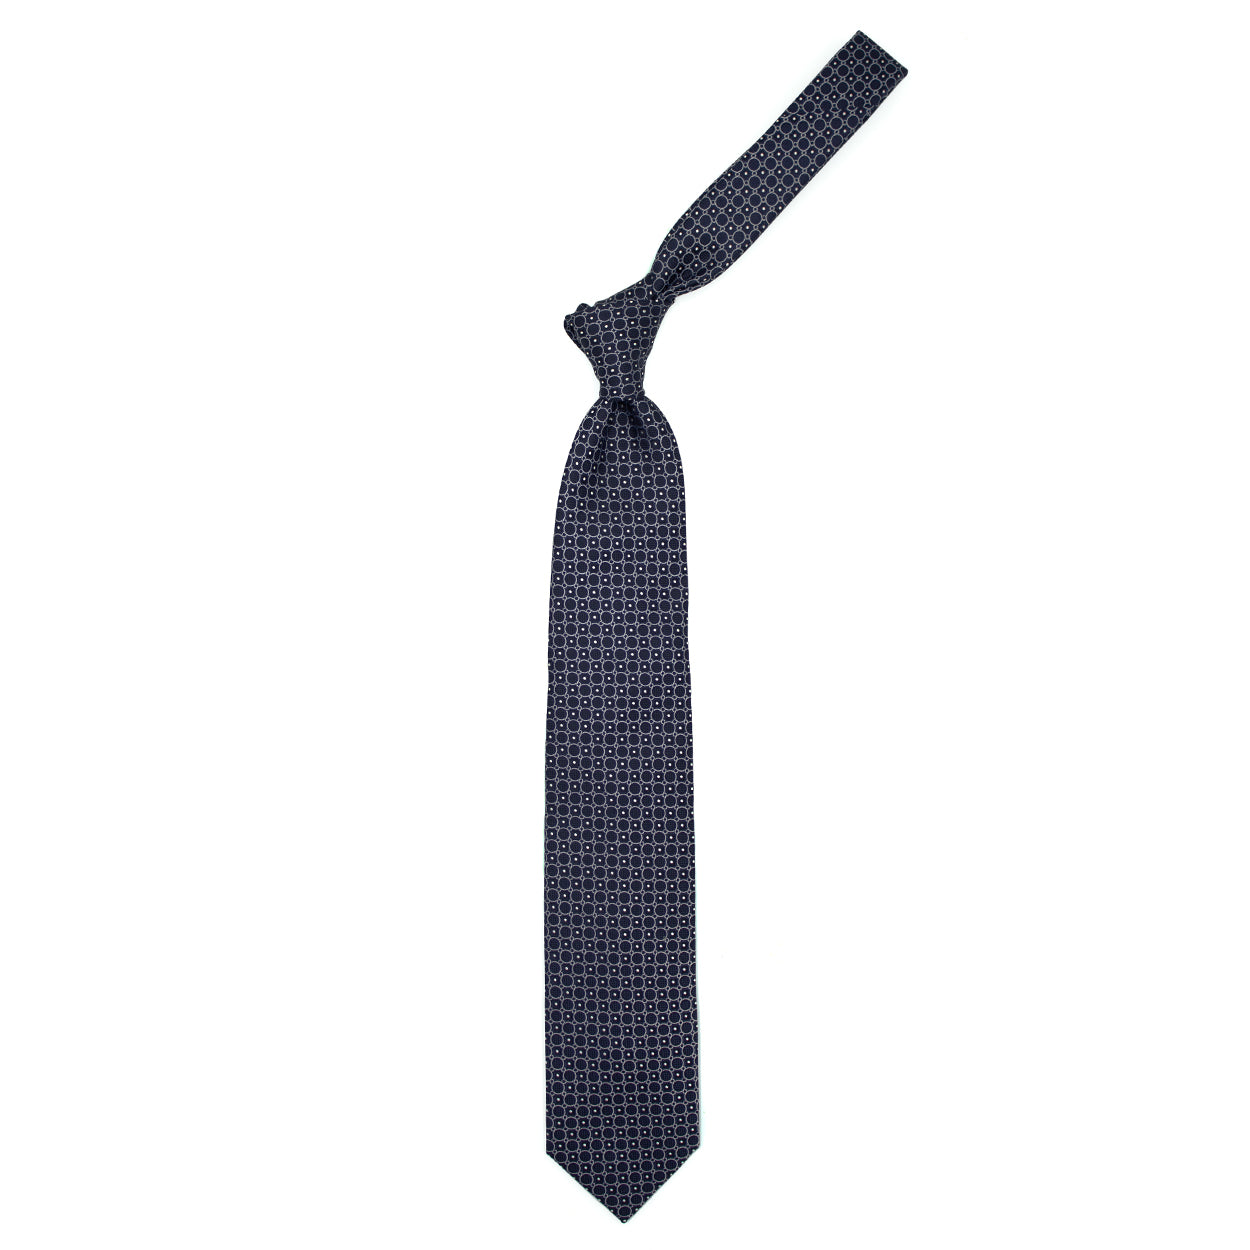 Cravatta blu con cerchi grigi e pallini bianchi